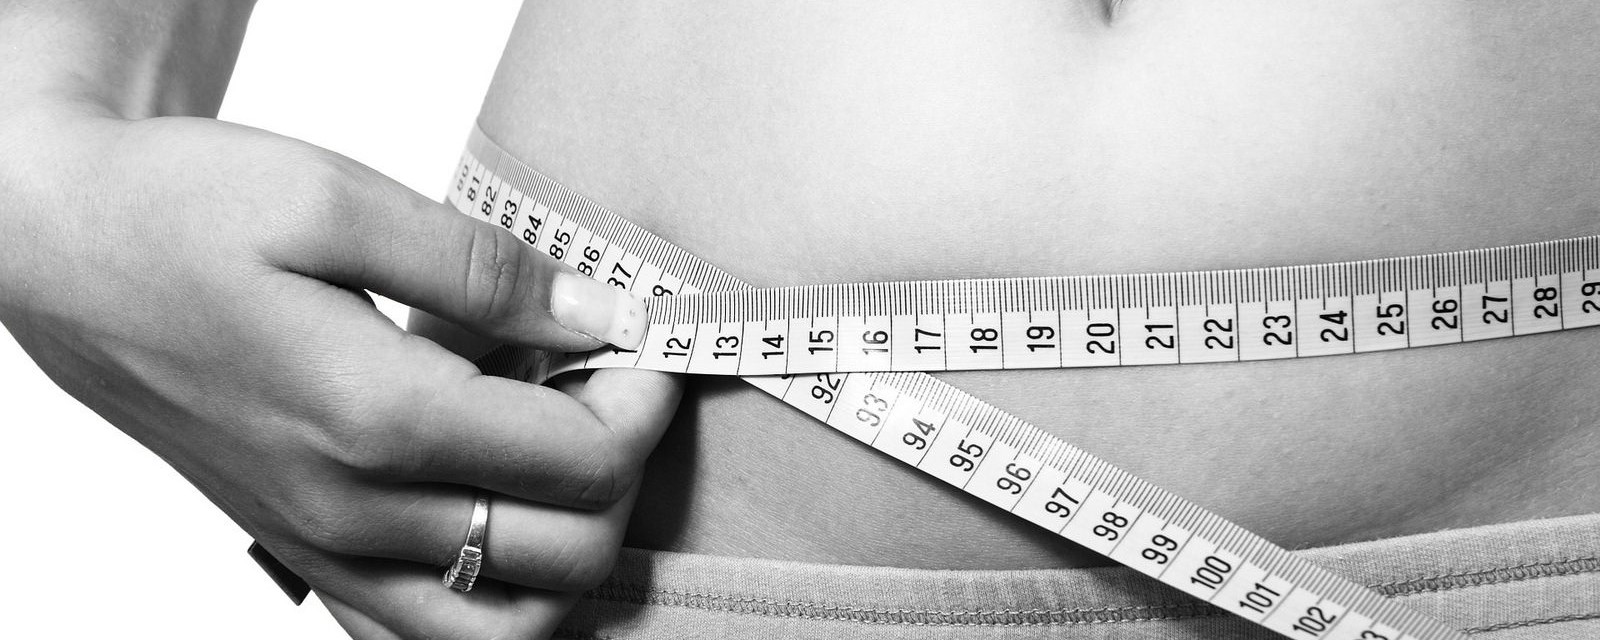 15 pierdere în greutate în 3 săptămâni mass gainer fat burner